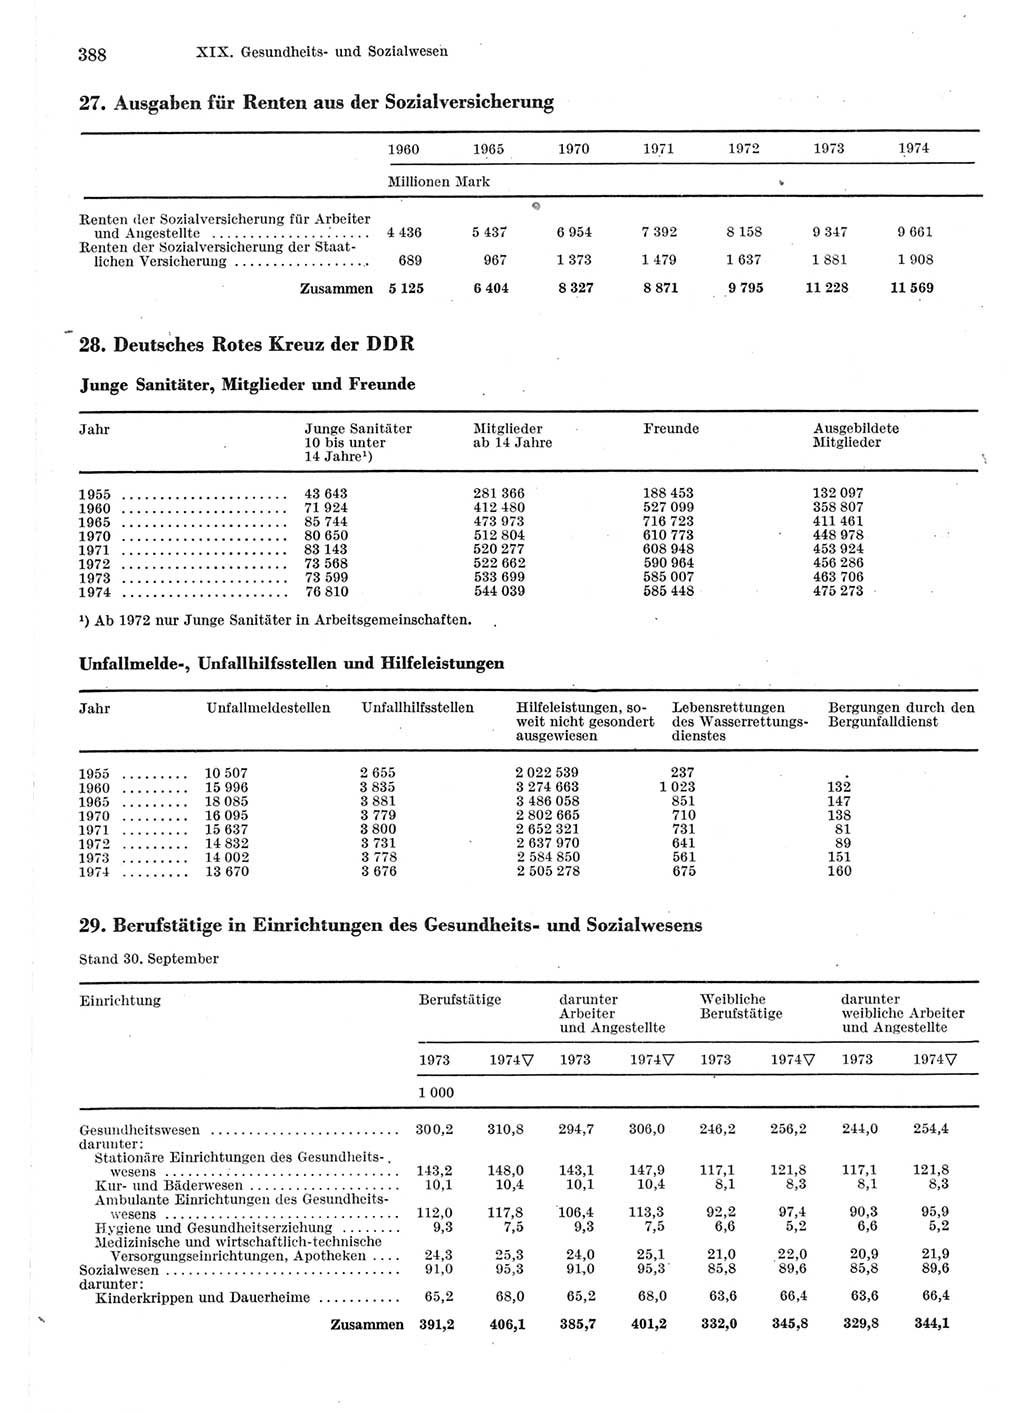 Statistisches Jahrbuch der Deutschen Demokratischen Republik (DDR) 1975, Seite 388 (Stat. Jb. DDR 1975, S. 388)